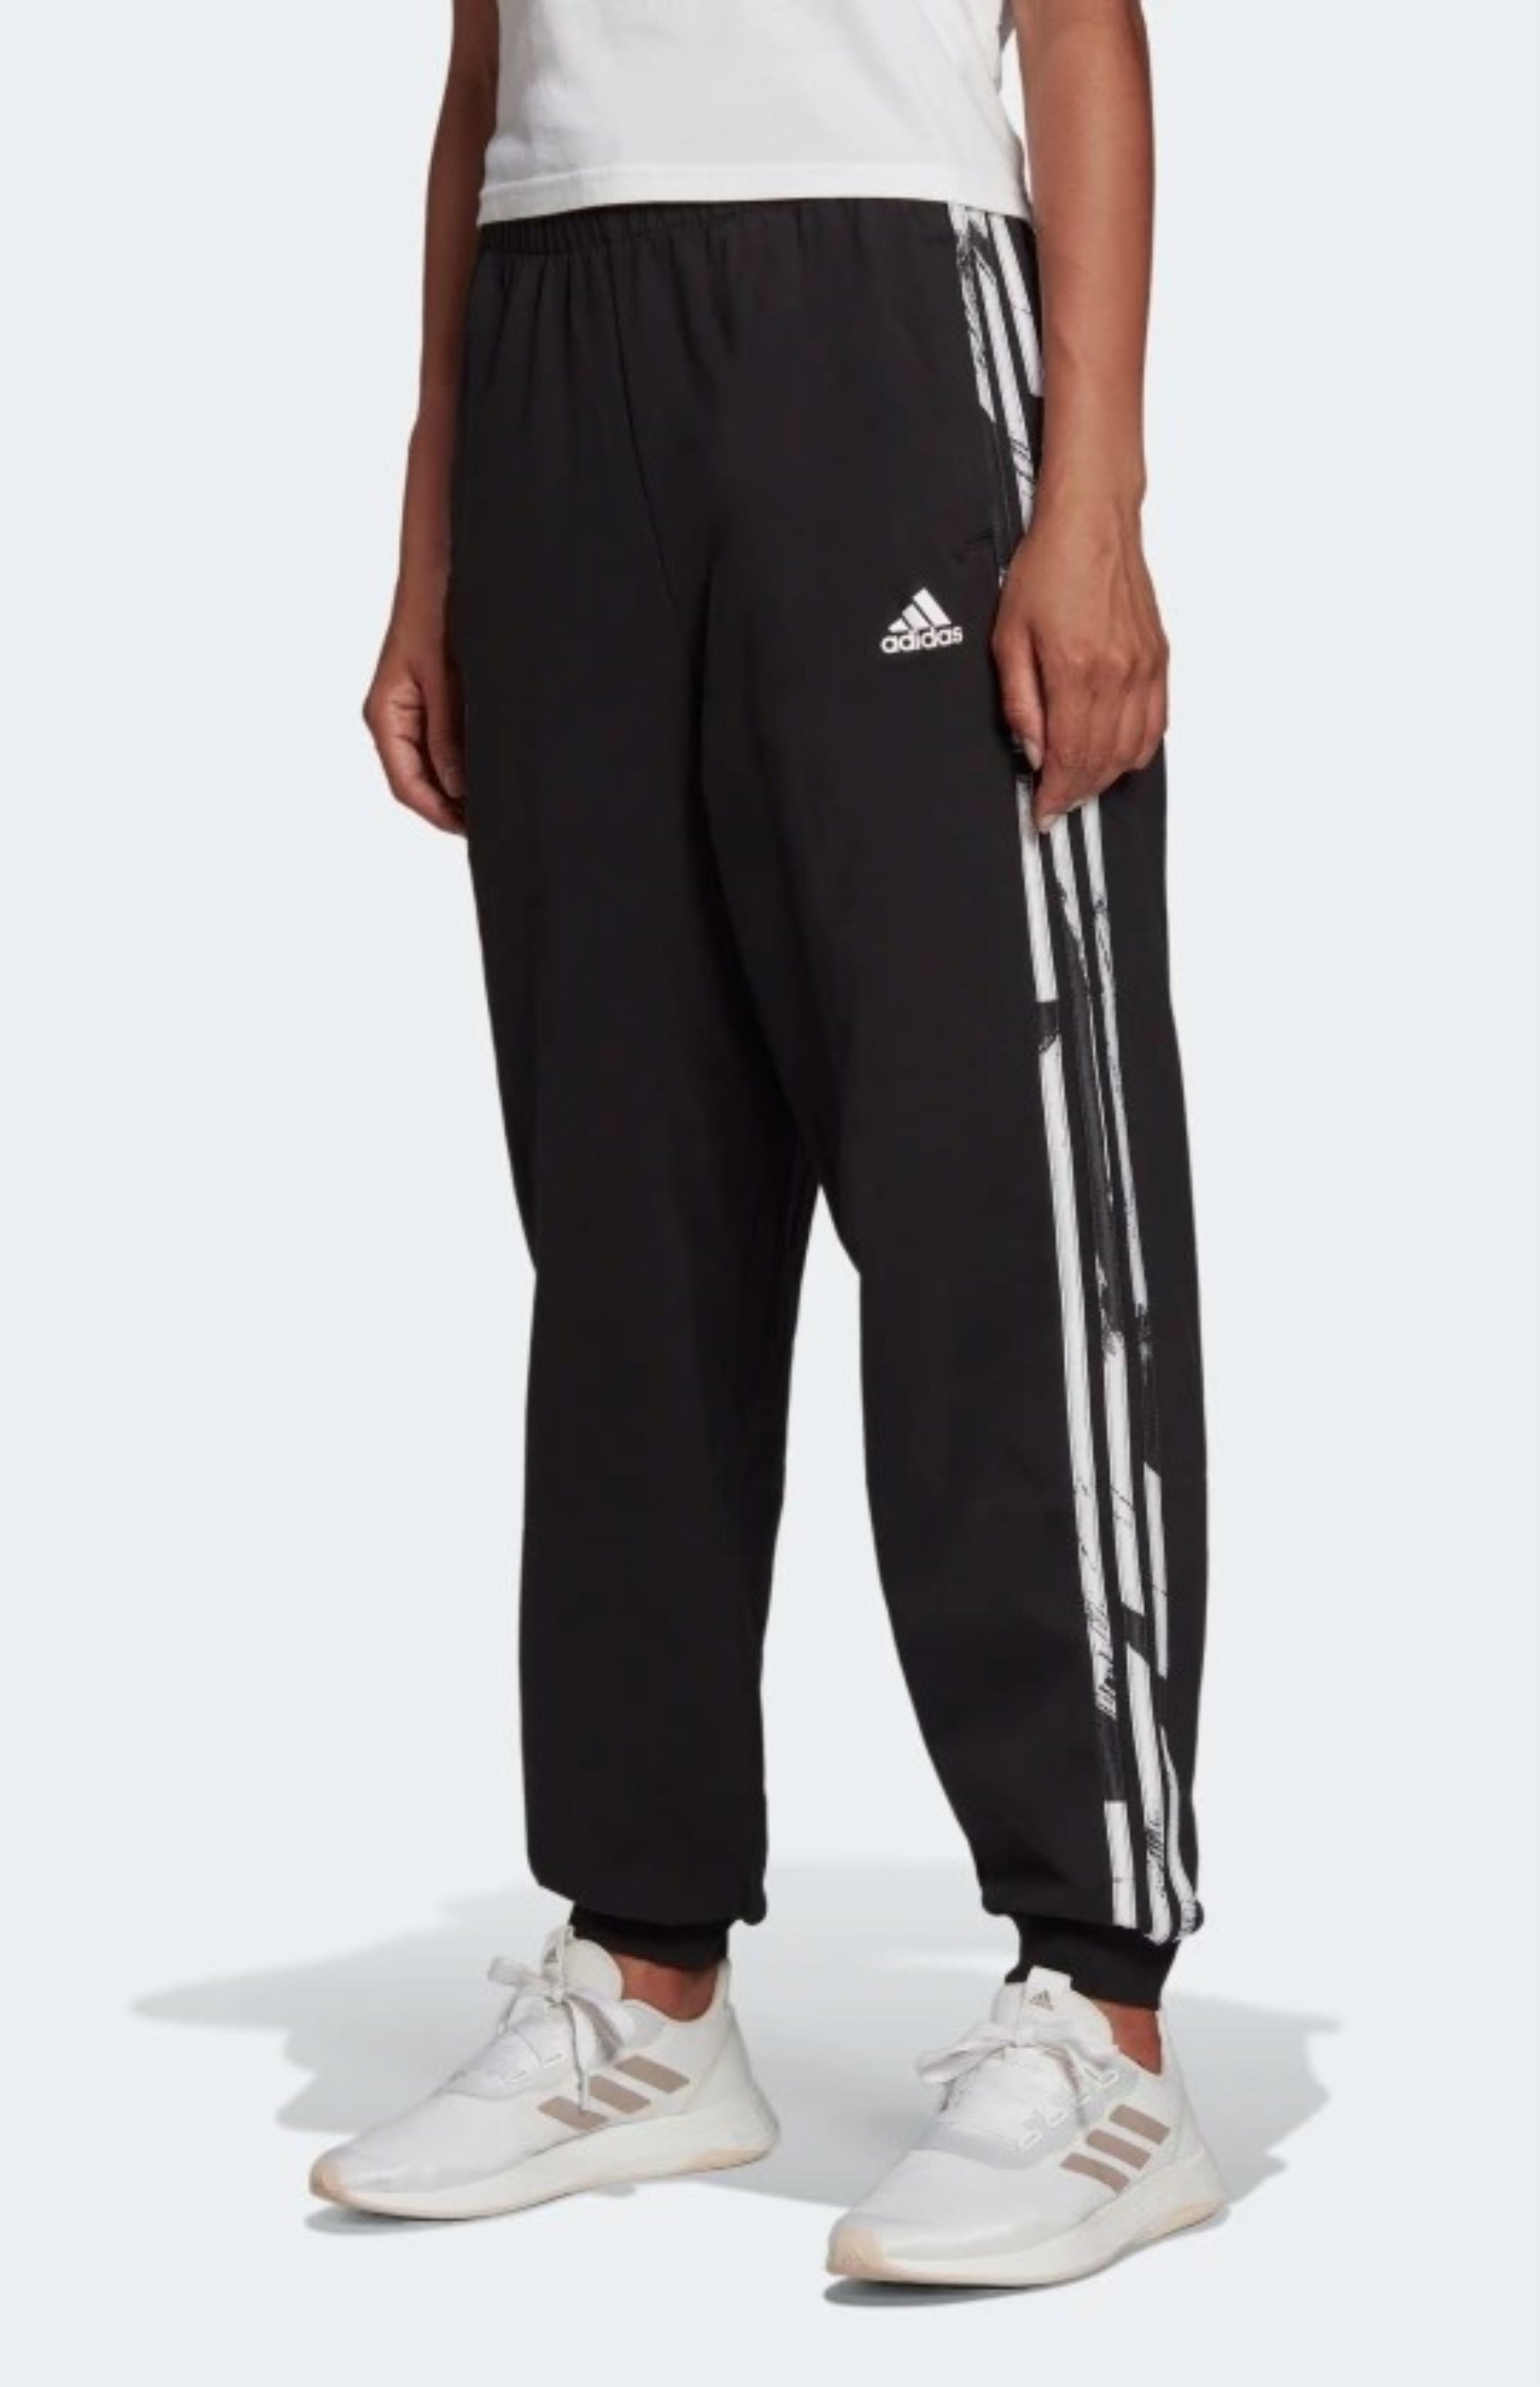 Adidas Women's Essentials Print 3-Stripes Pants, Black/White – Fanletic